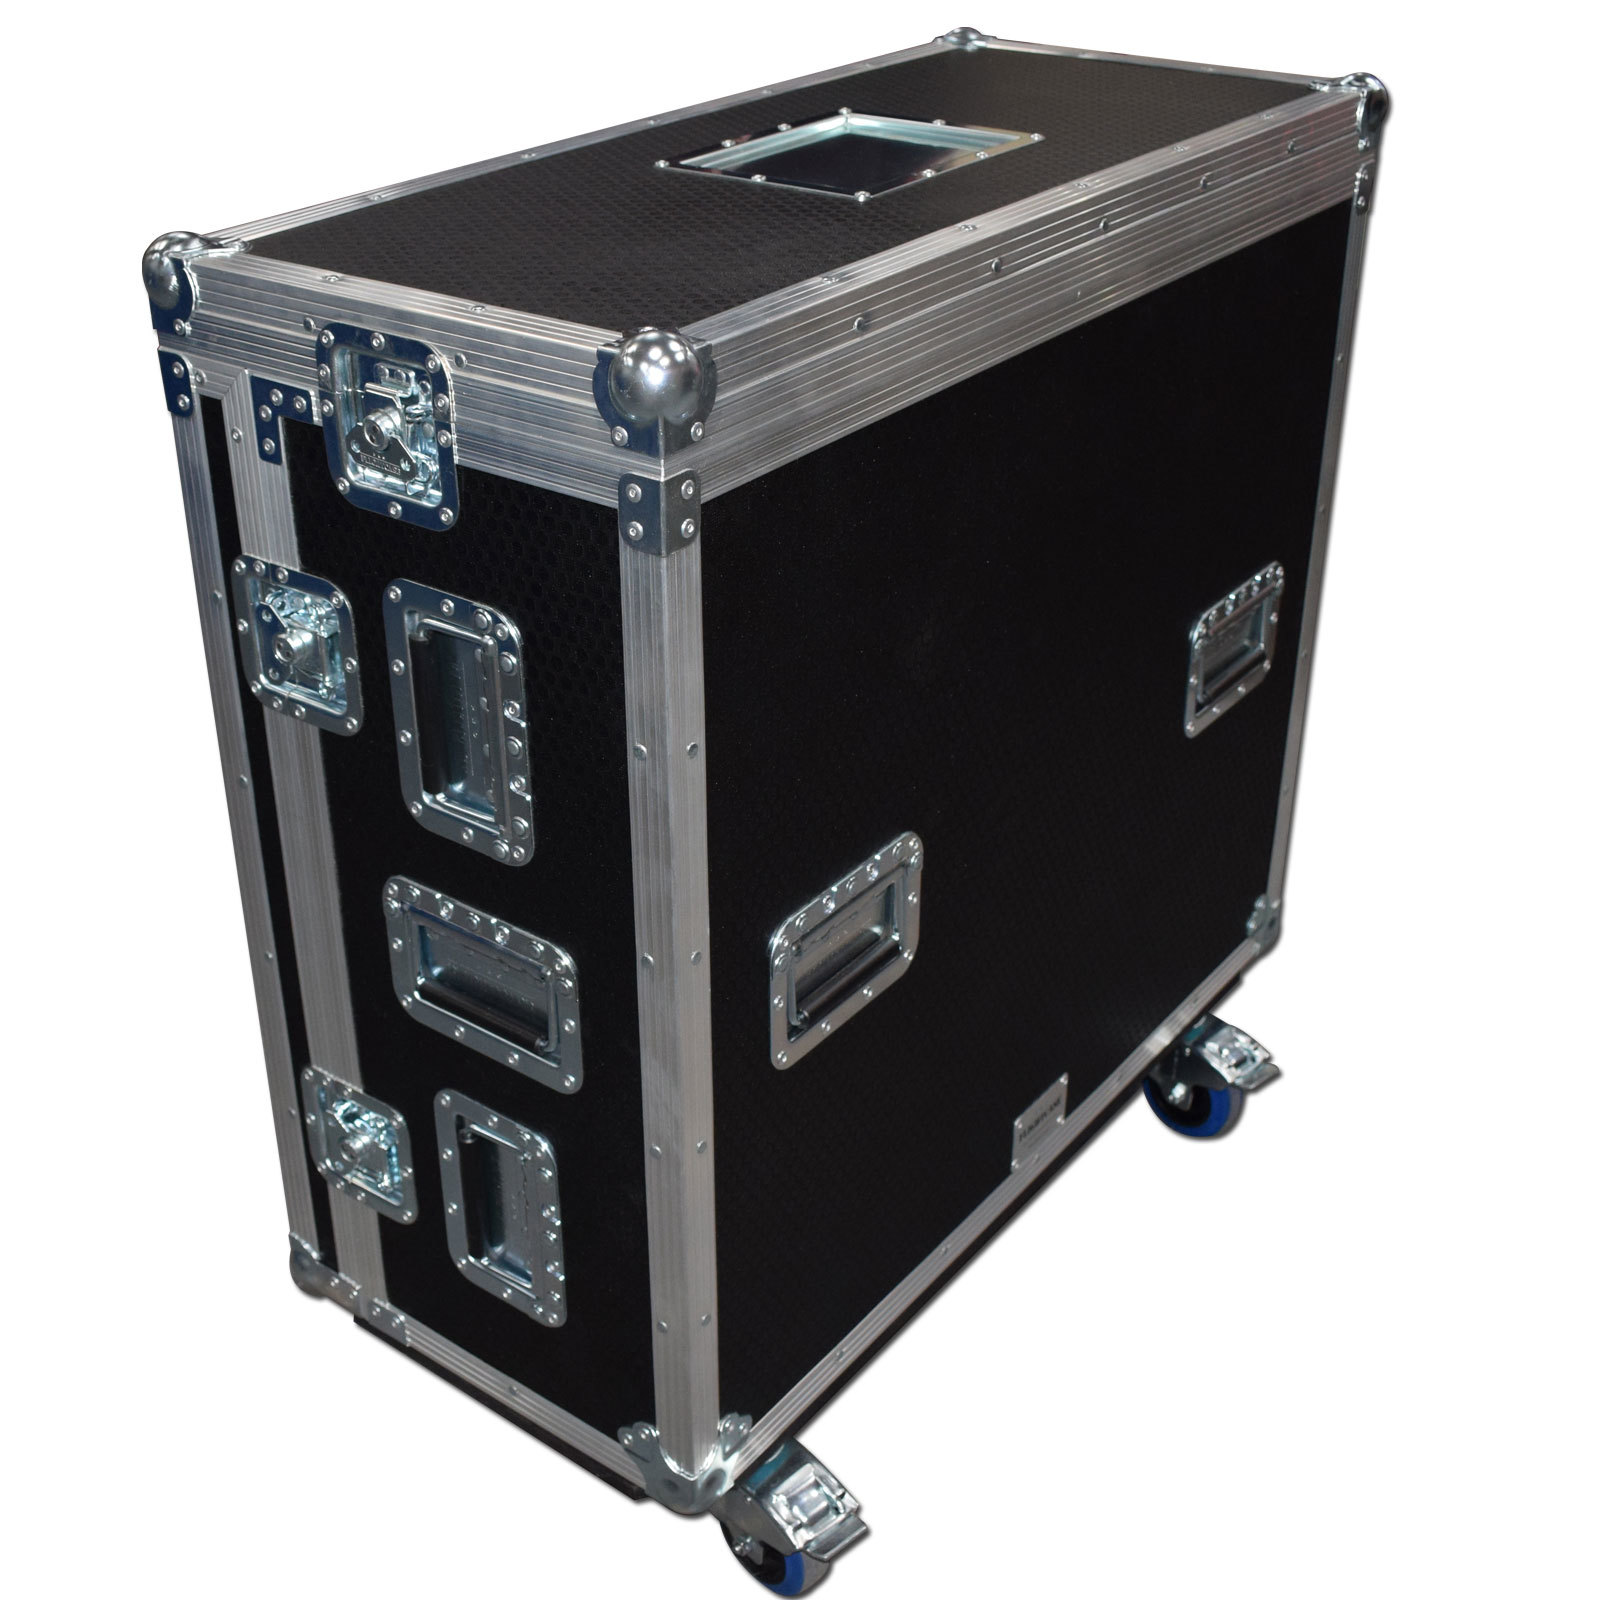 SQ-7 Digital Mixer Flightcase With Dog Box And Castors